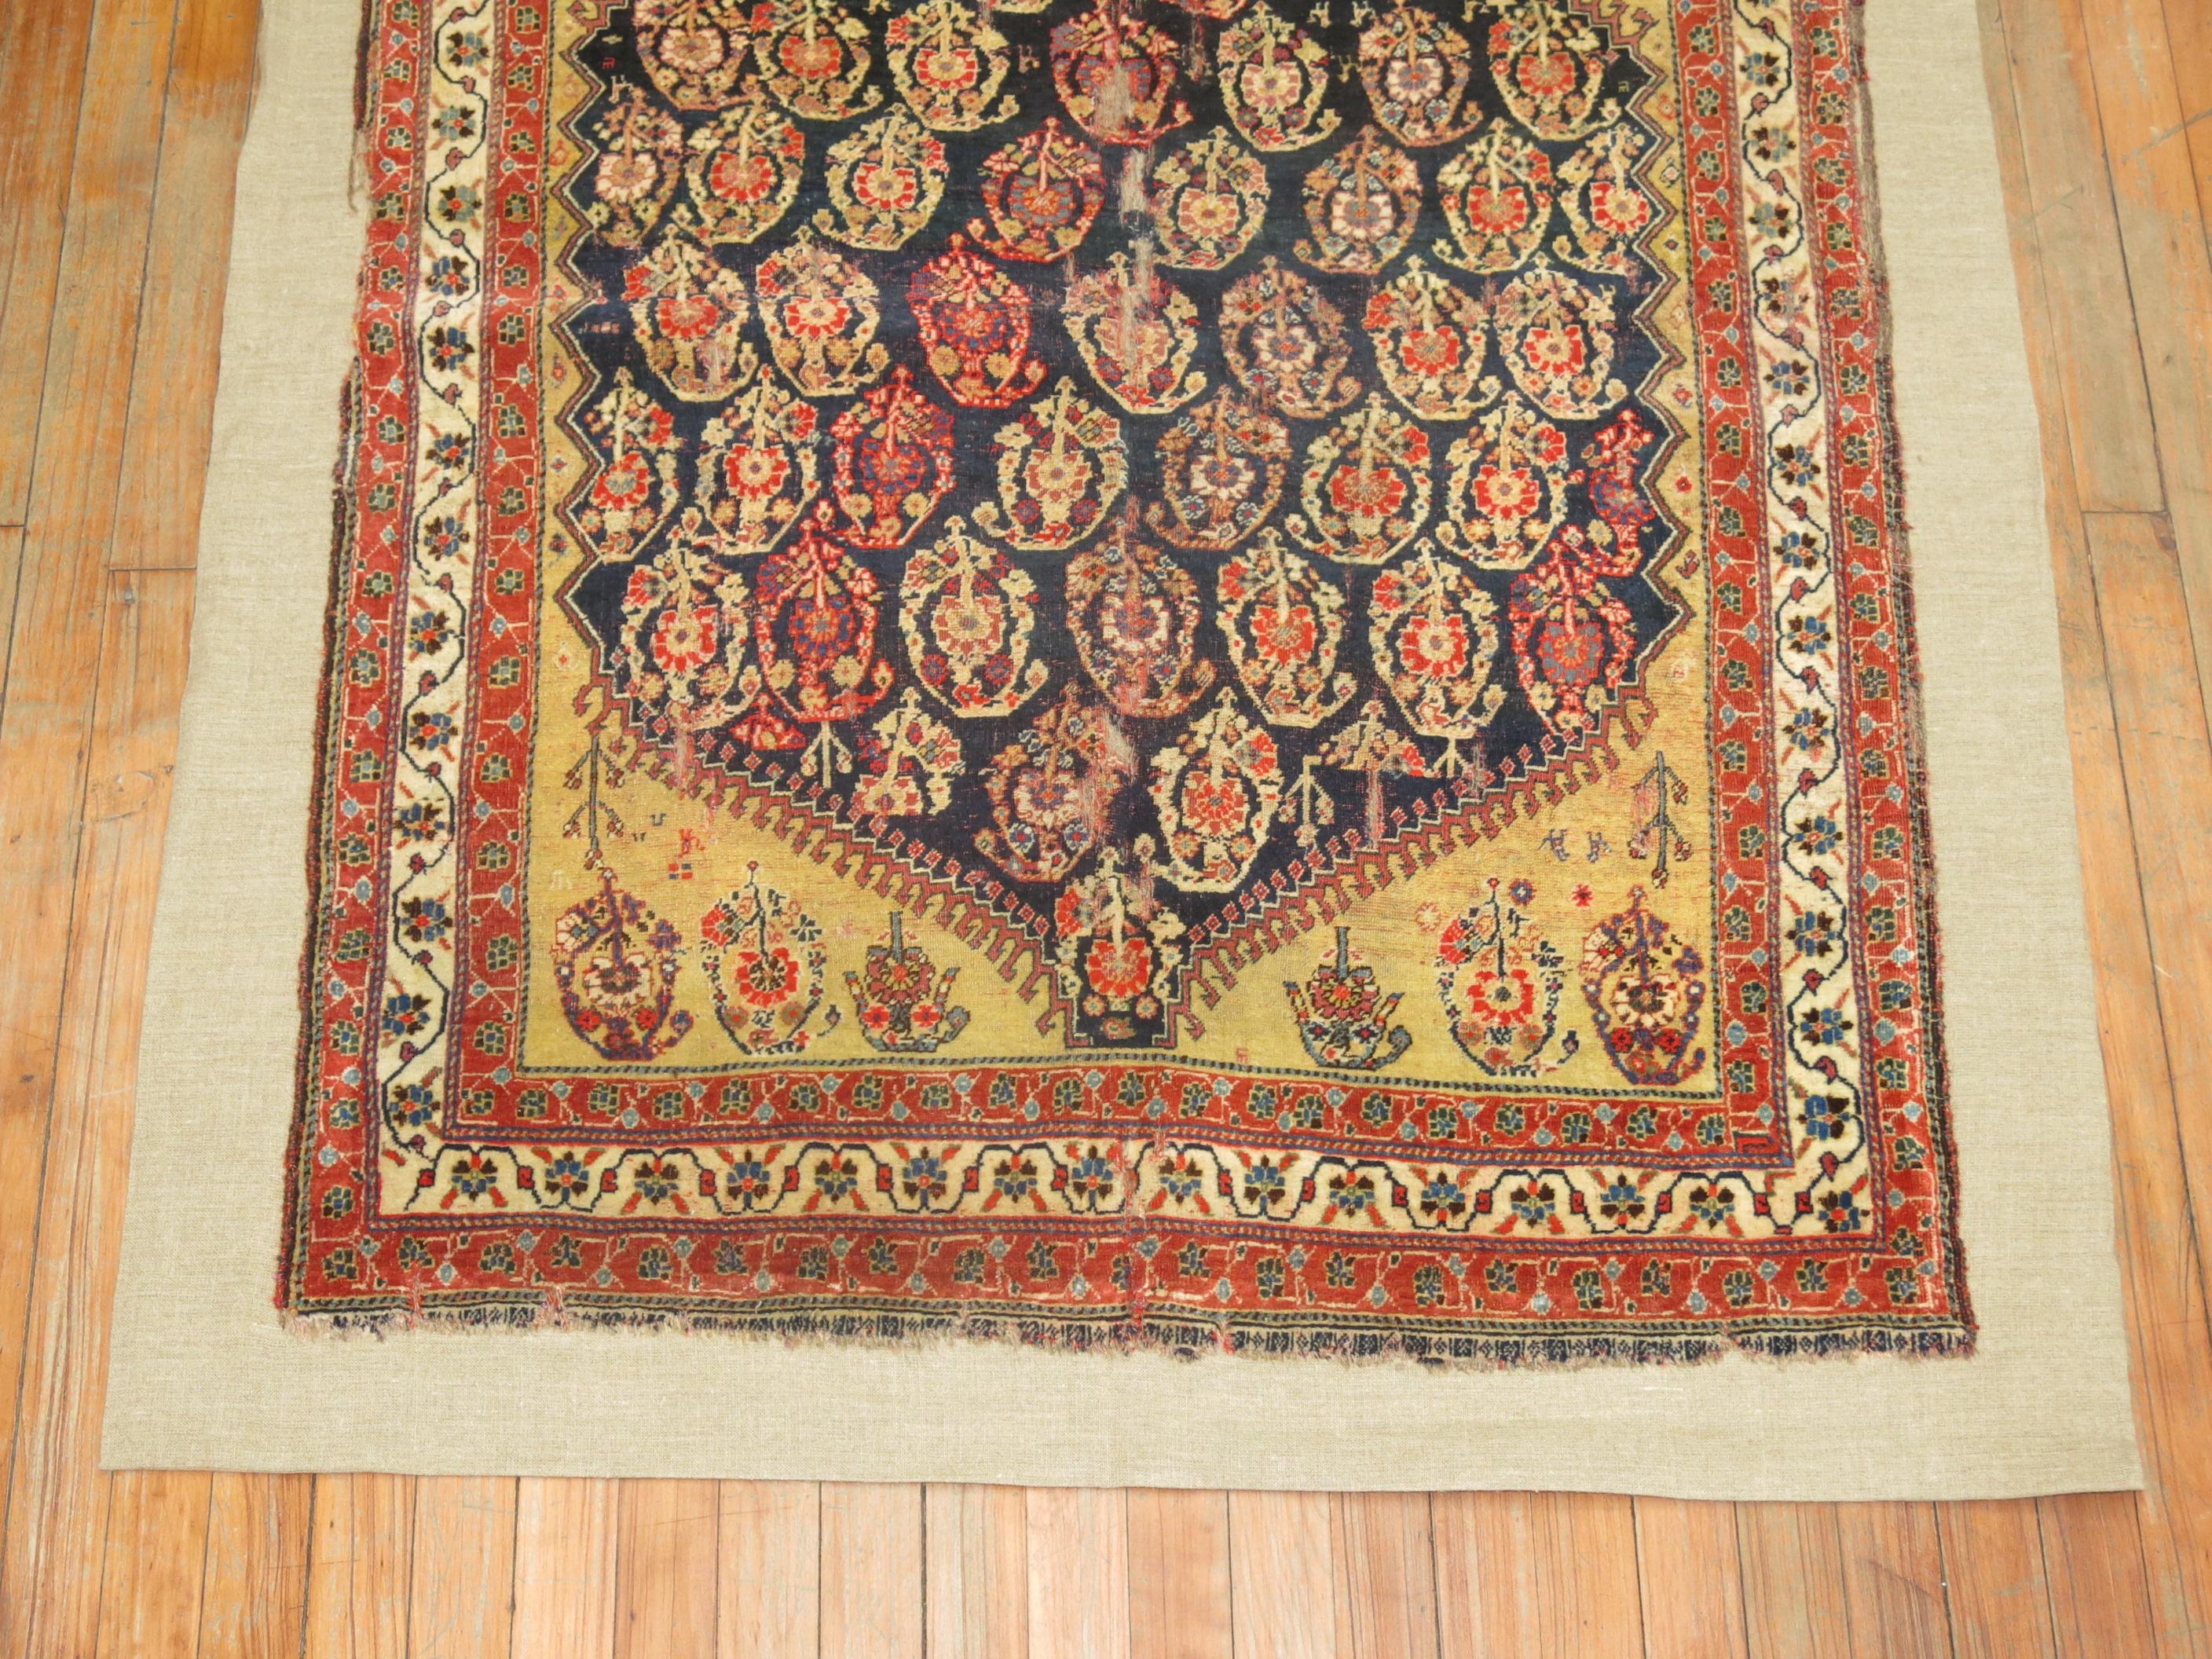 Ein persischer Gaschgai-Teppich aus dem frühen 19. Jahrhundert, der auf eine leinwandähnliche Unterlage genäht ist. Dieser Artikel kann sowohl als Wand- als auch als Bodenbelag verwendet werden. Sie kann auf Wunsch begangen werden.

3'6'' x 5'8''